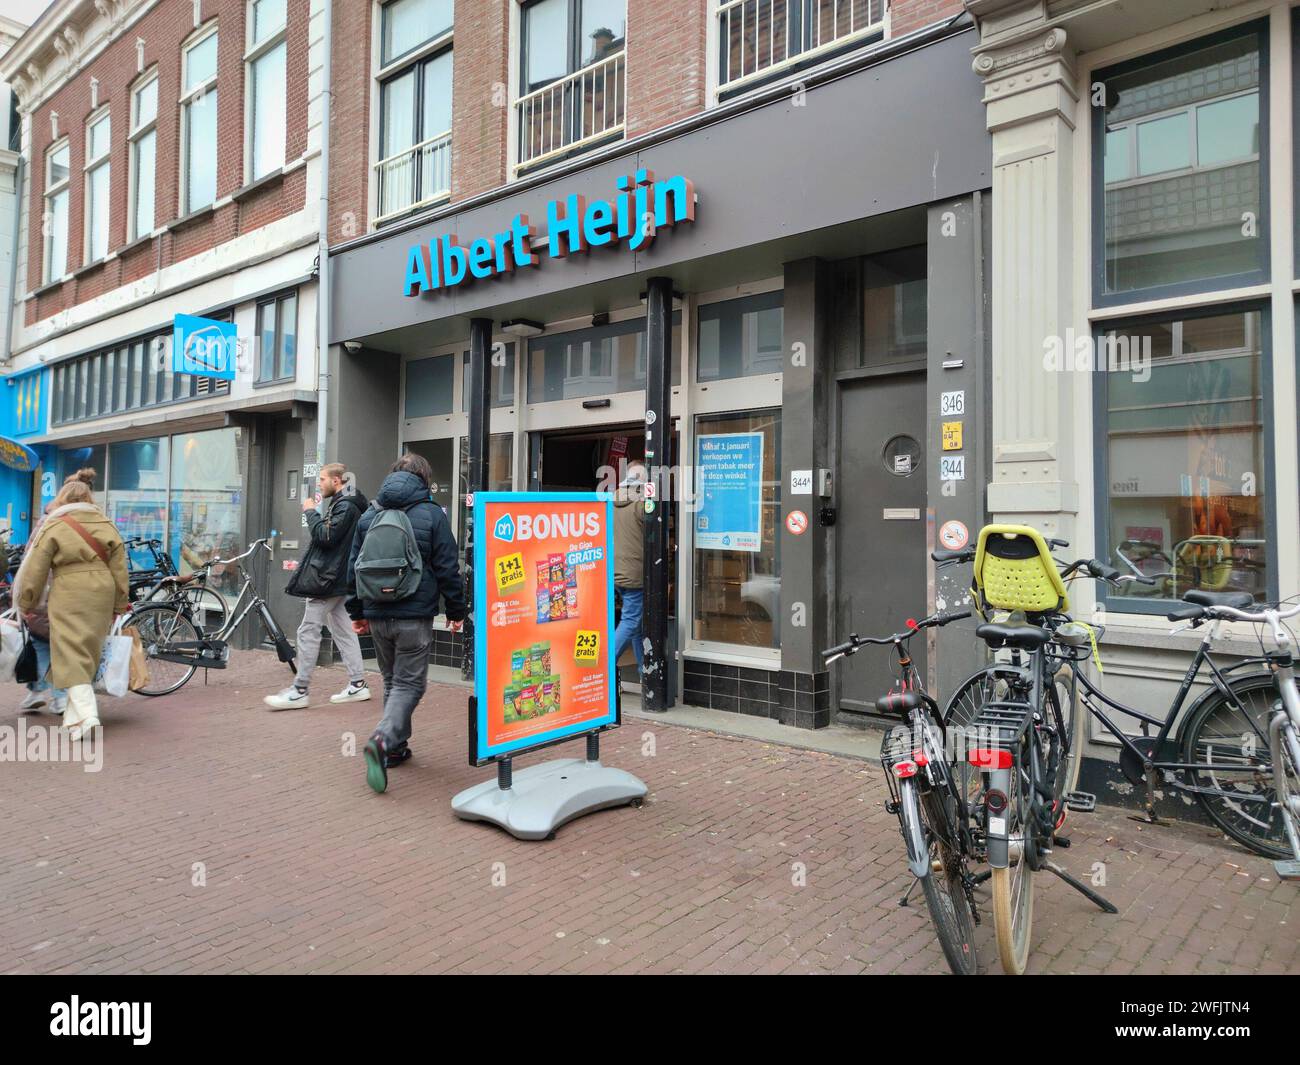 Albert Heijn Supermarket at Keizerstraat in Scheveningen, The Netherlands Stock Photo